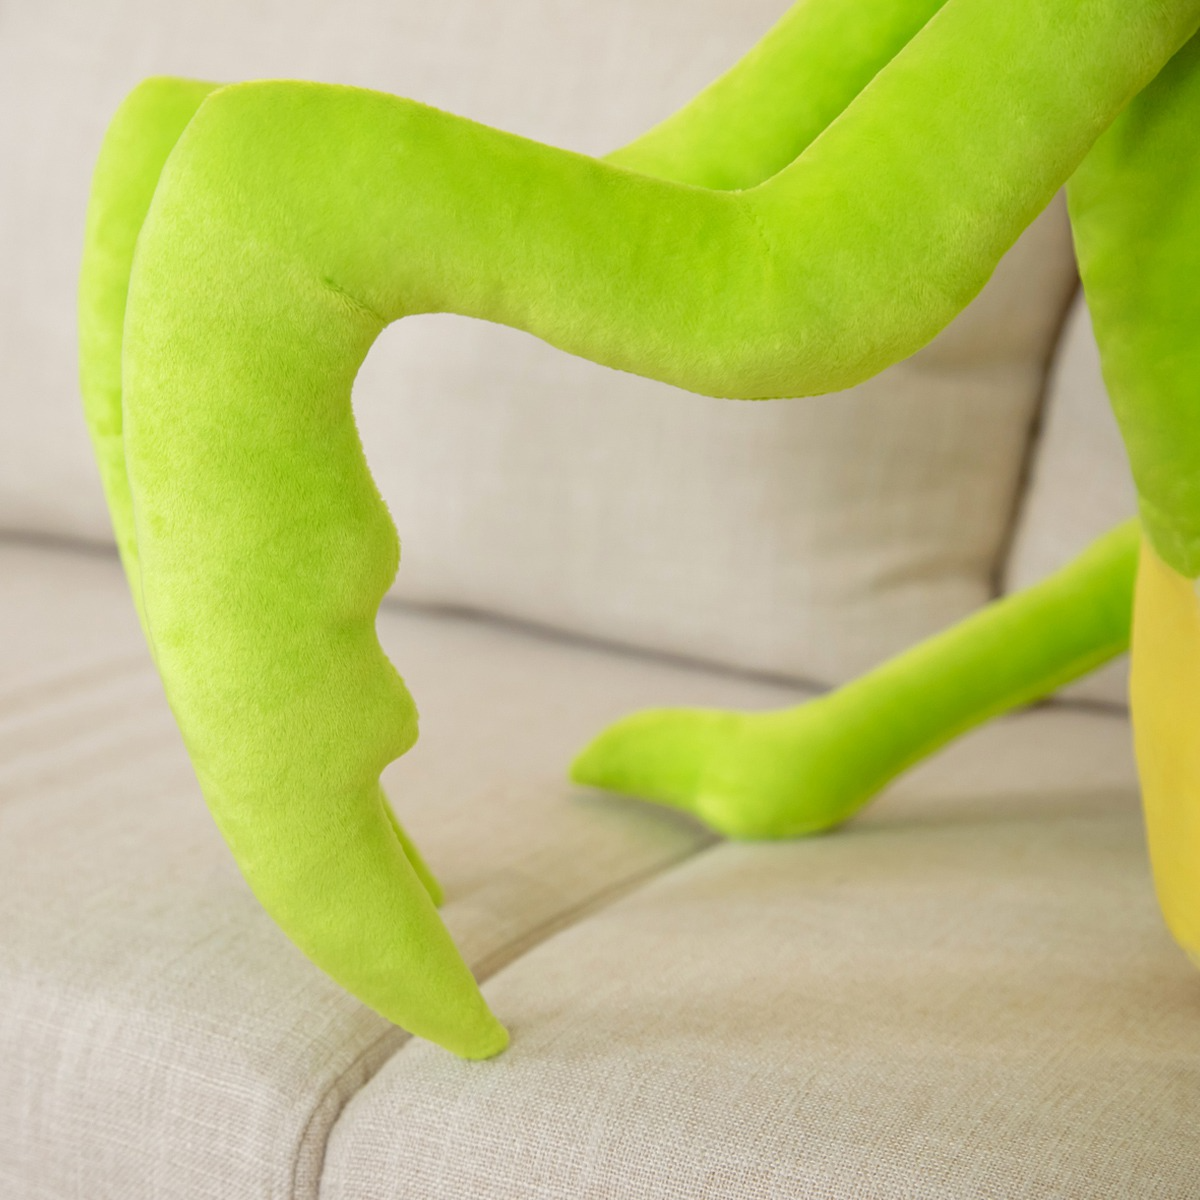 Large Praying Mantis Soft Stuffed Plush Toy